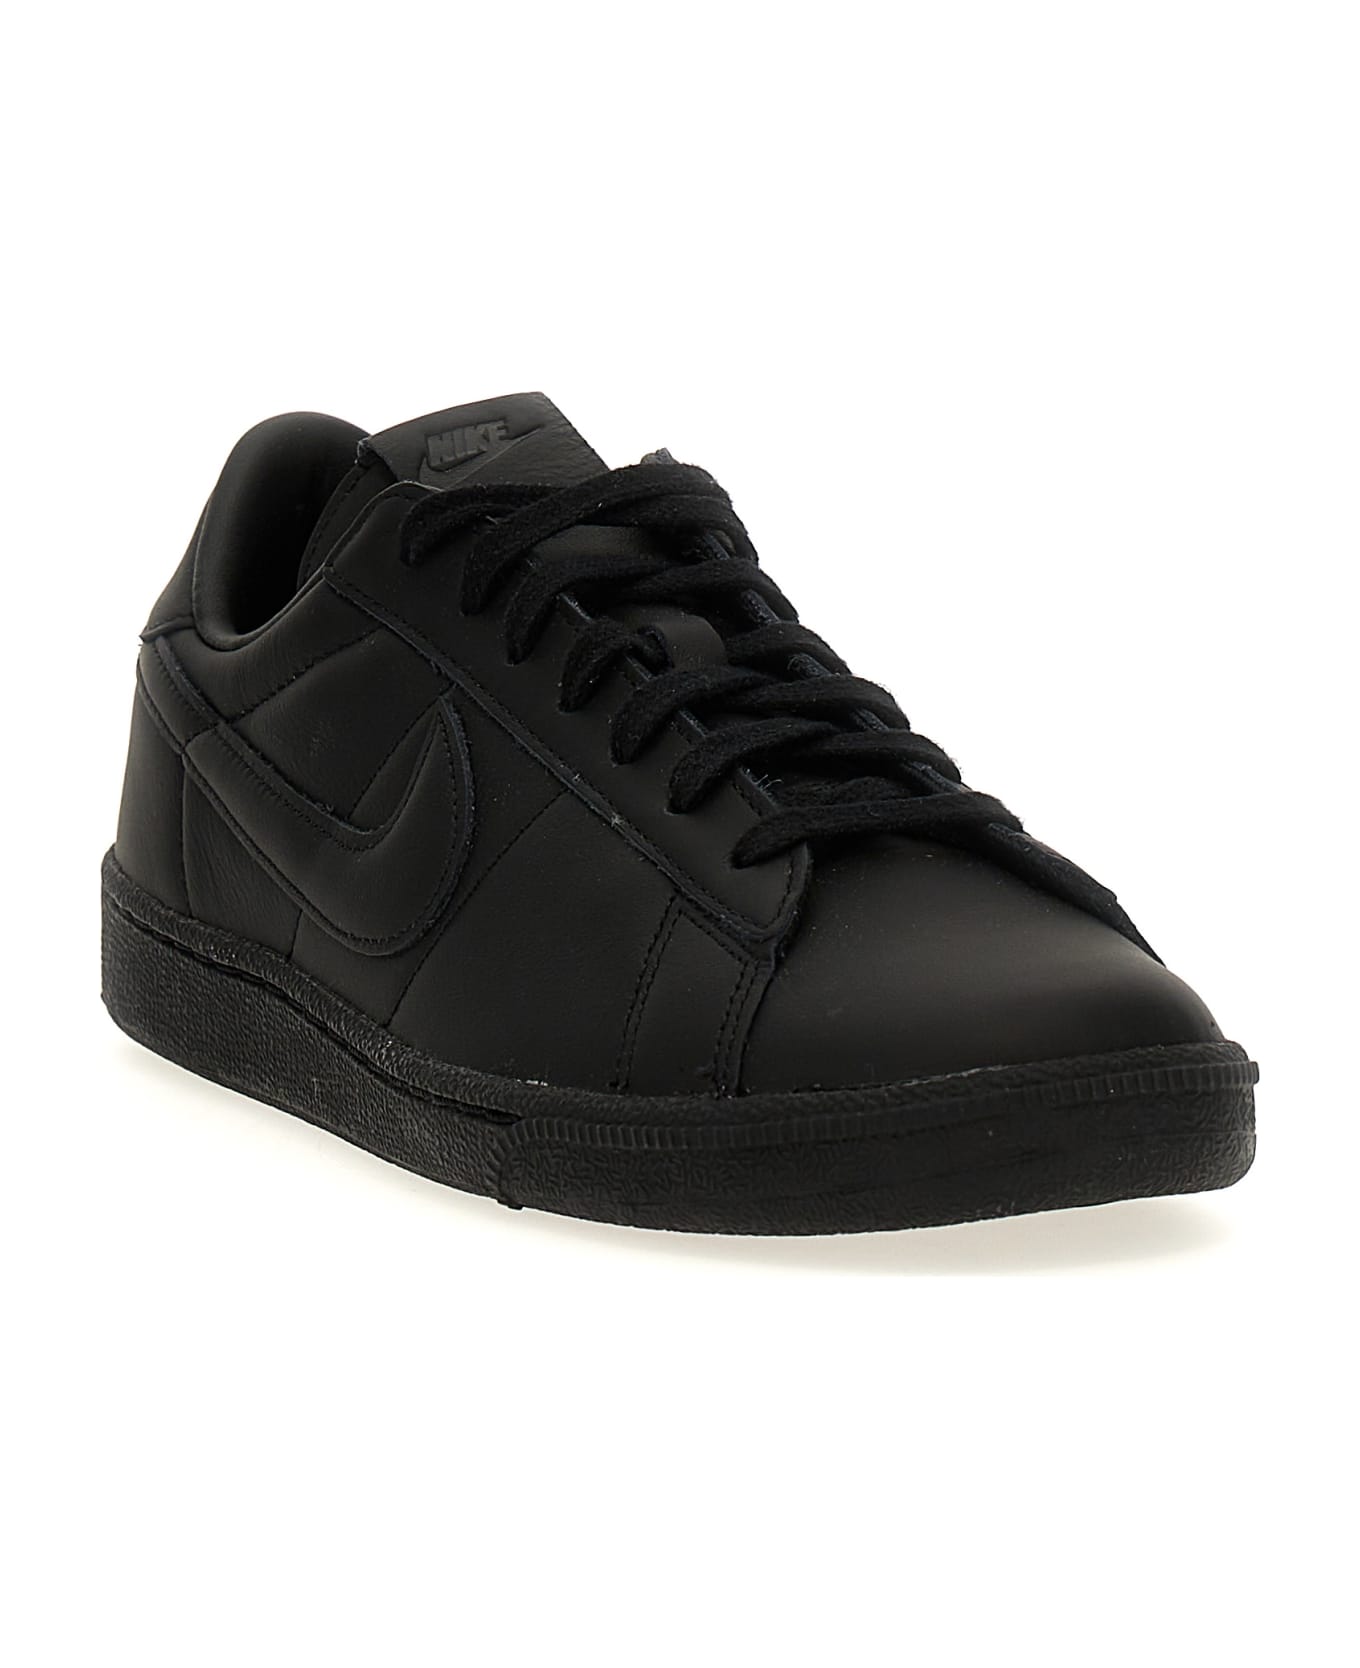 Black Comme des Garçons 'tennis Classic Sp' Sneakers - Black  